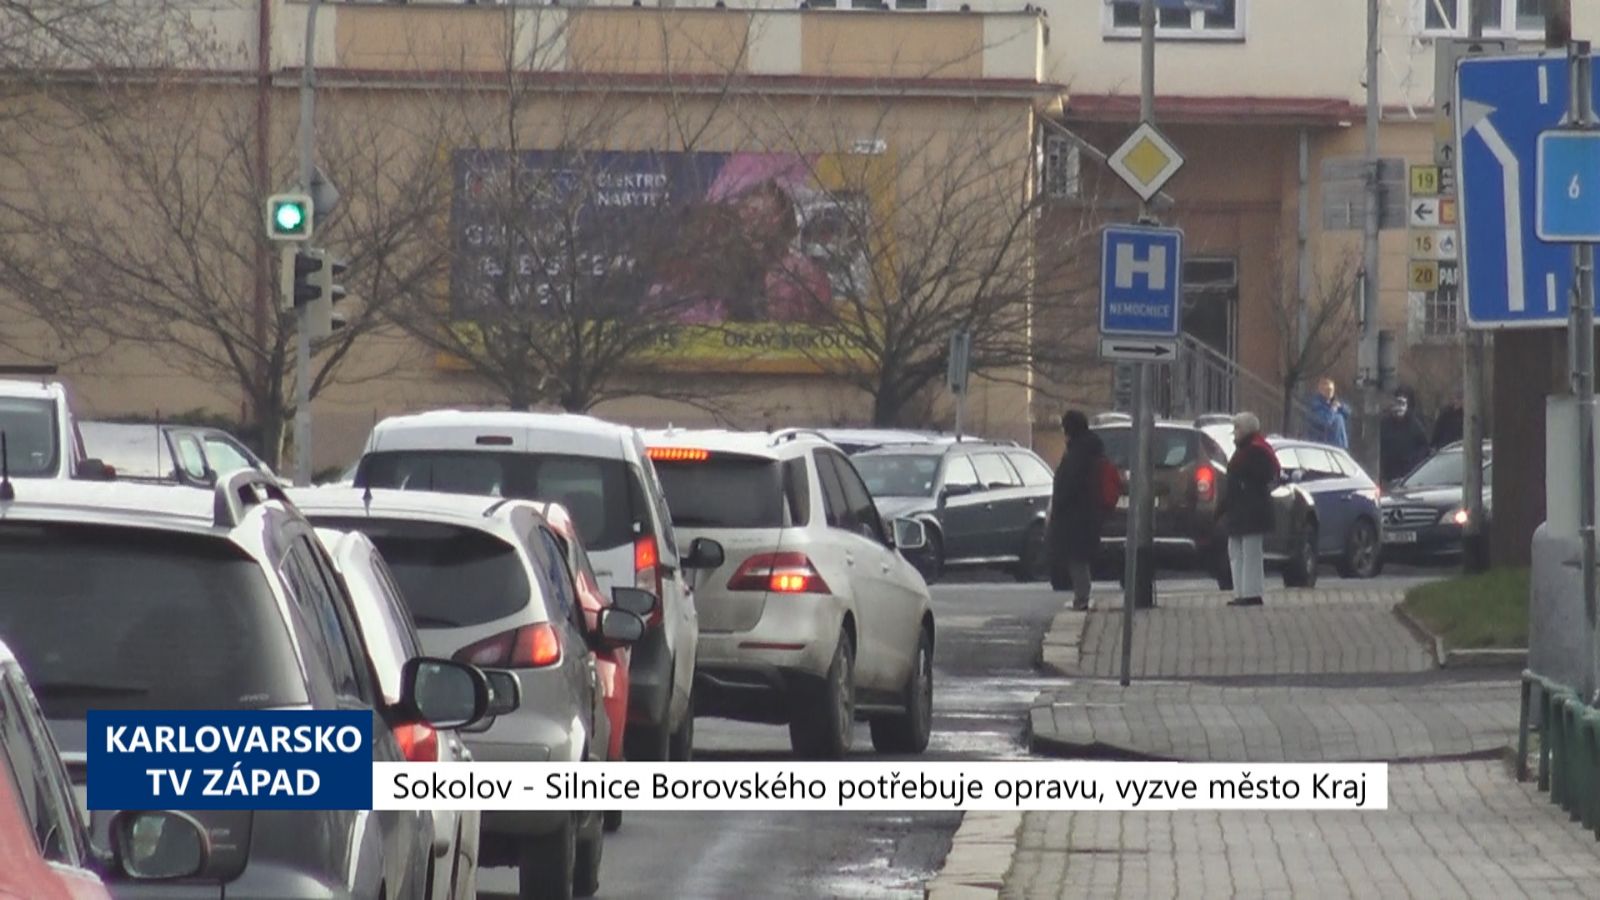 Sokolov: Silnice Borovského potřebuje rekonstrukci, vyzve město Kraj (TV Západ)